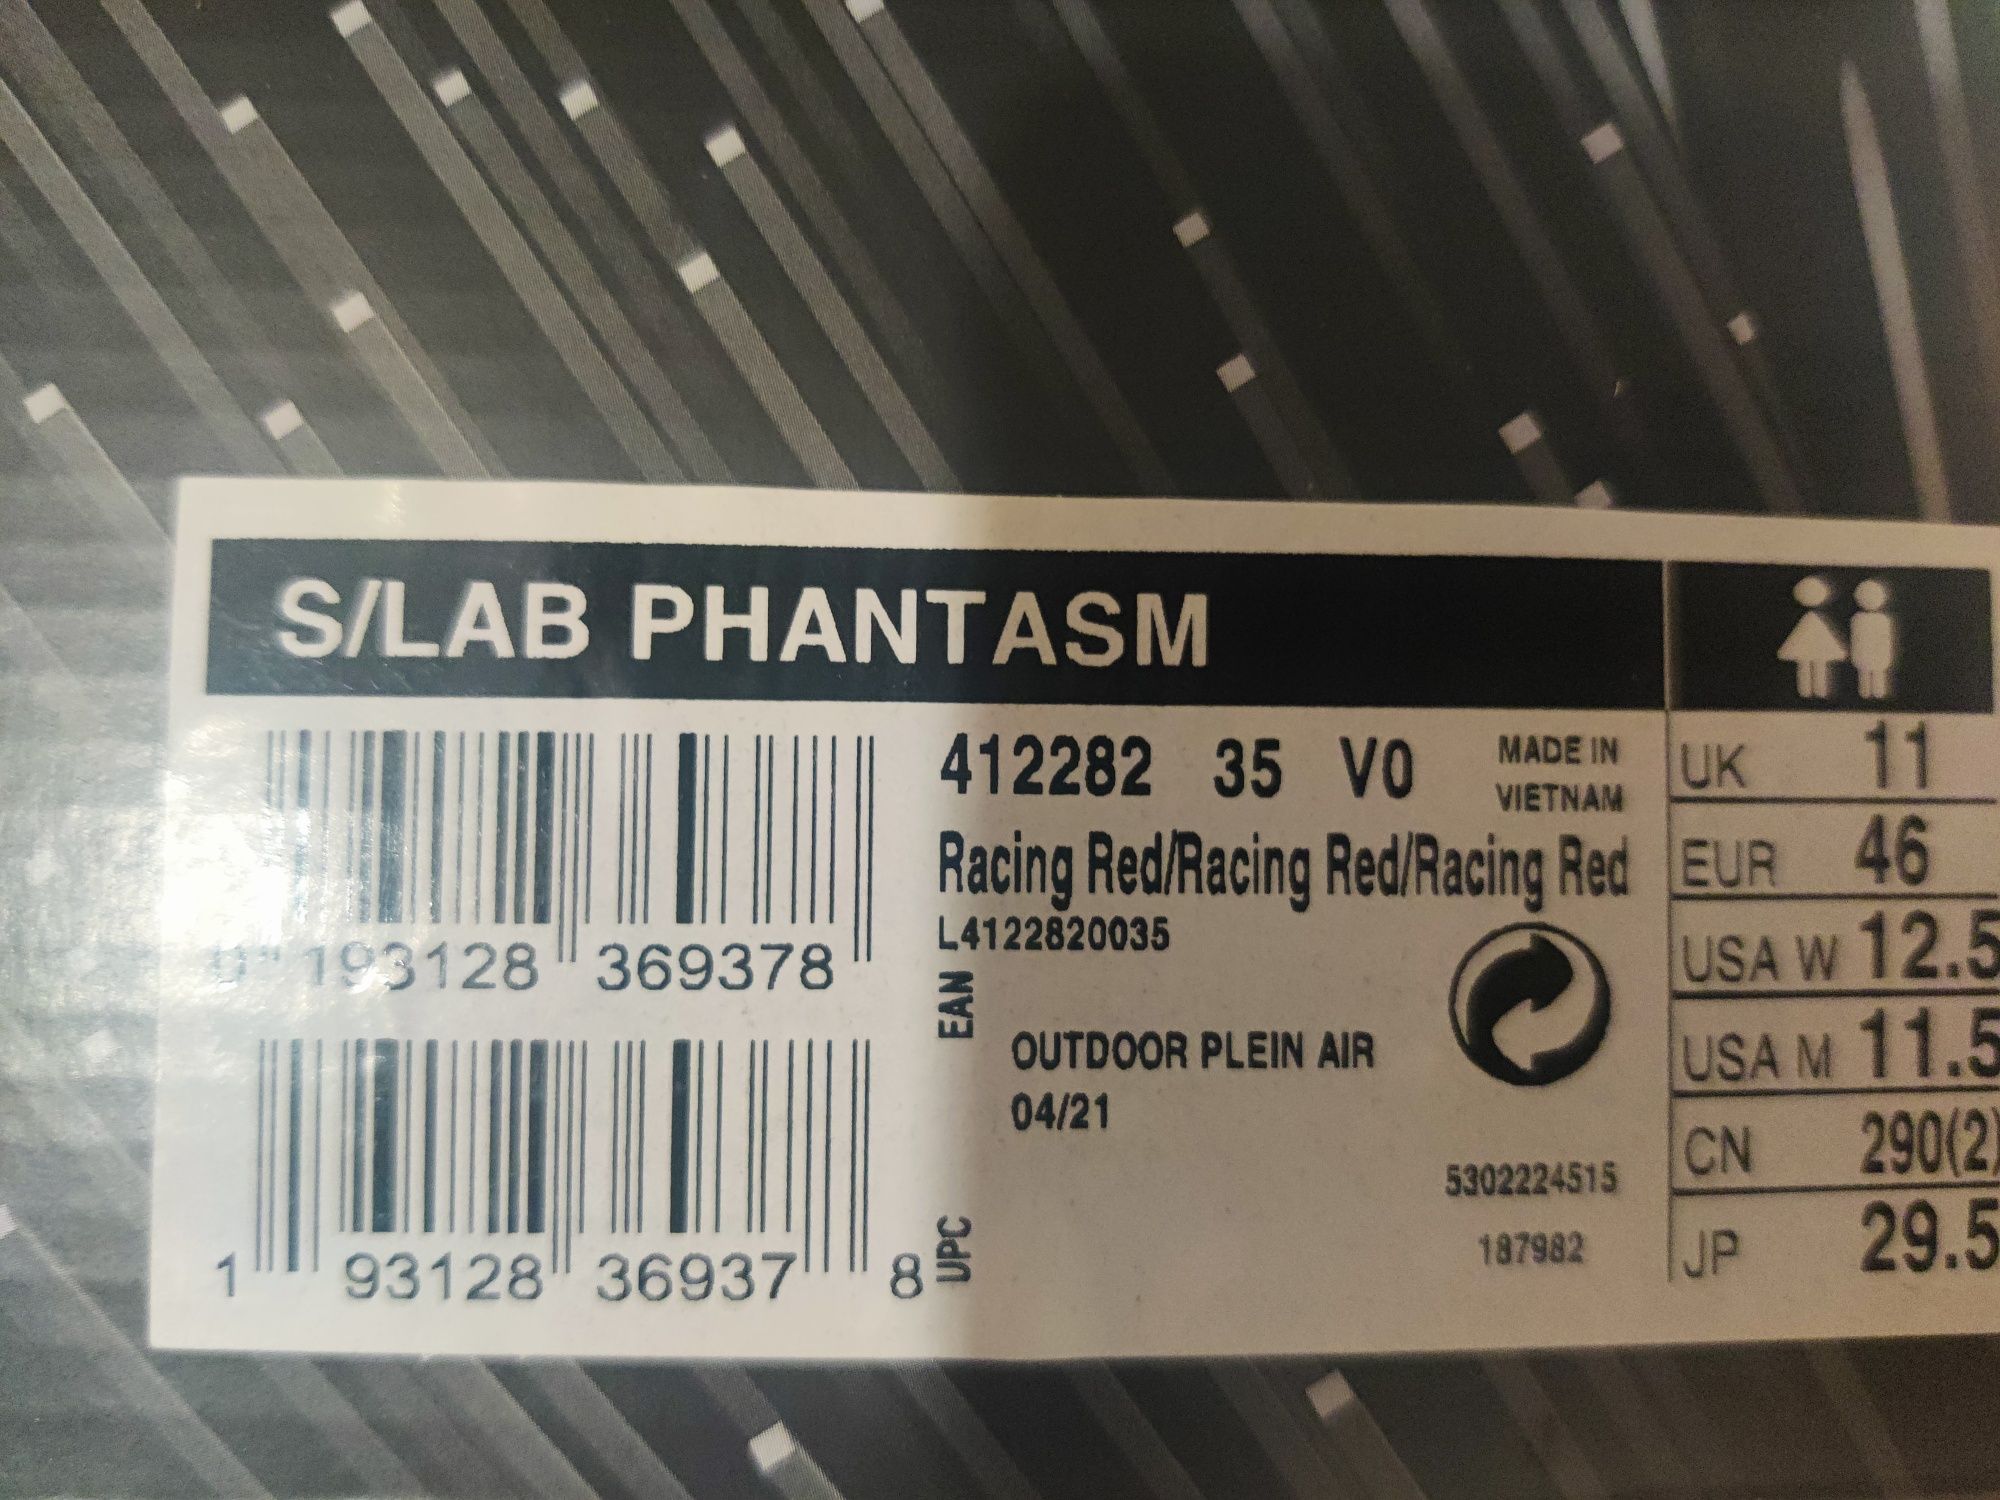 Salomon S/Lab Phantasm